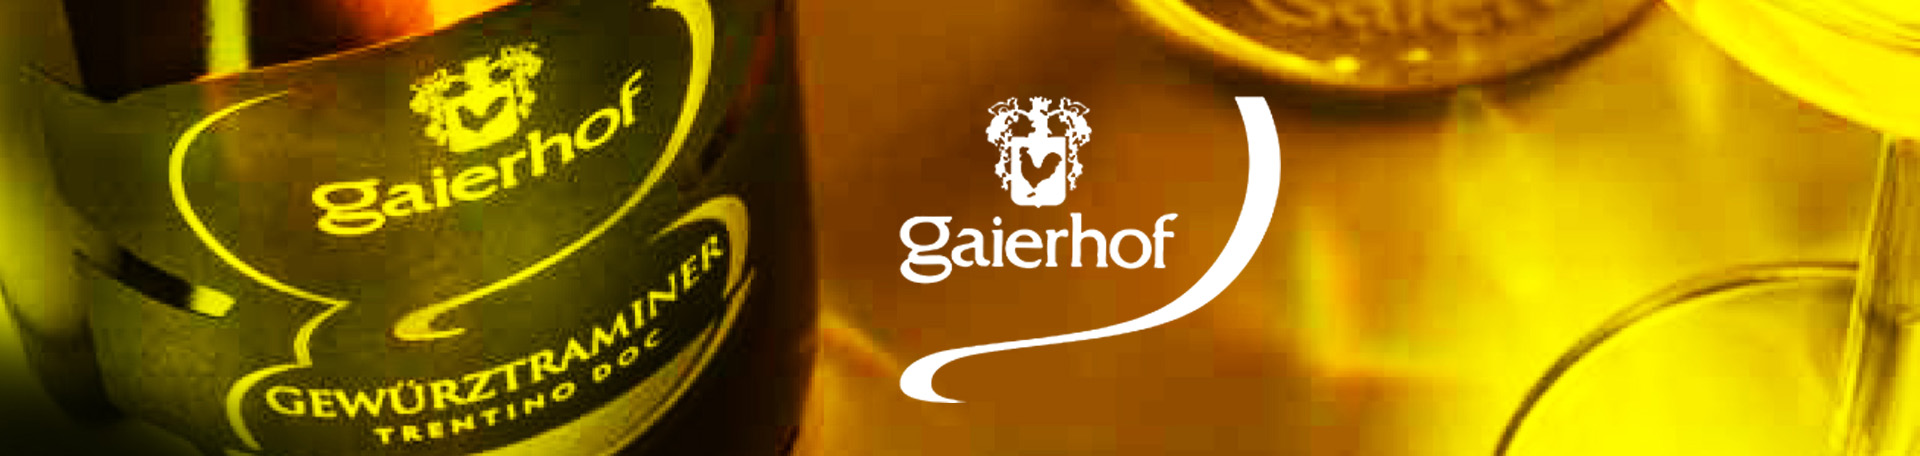 Gaierhof wines bottles